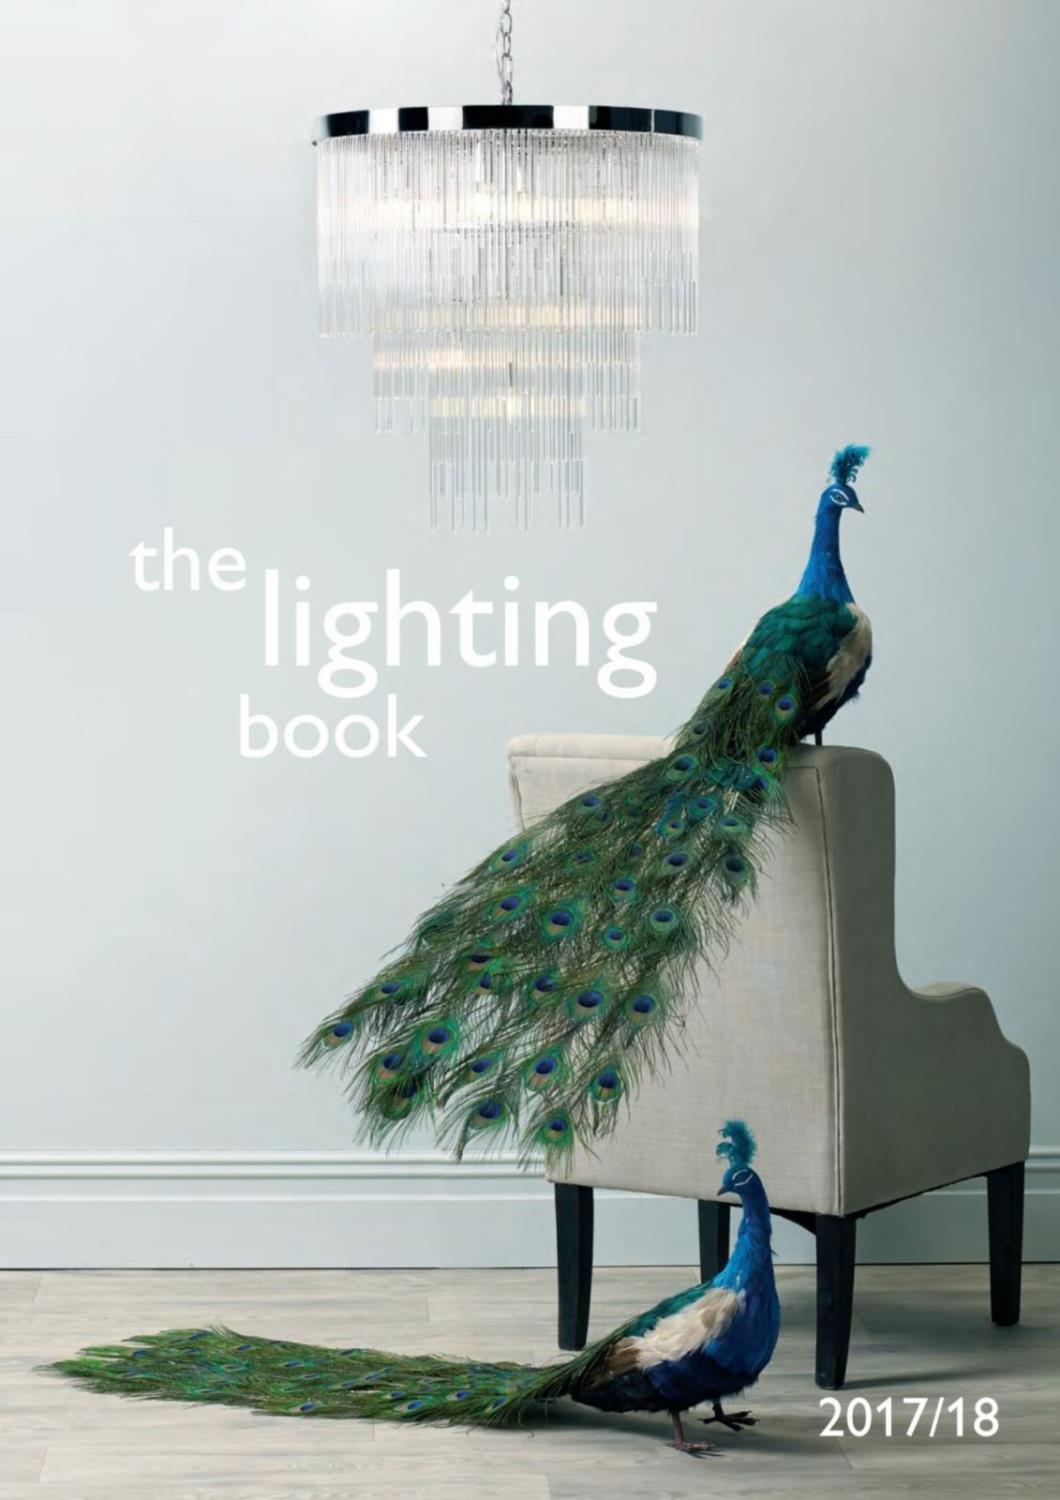 吊灯设计:Dar Lighting 2018年欧美知名灯饰设计画册